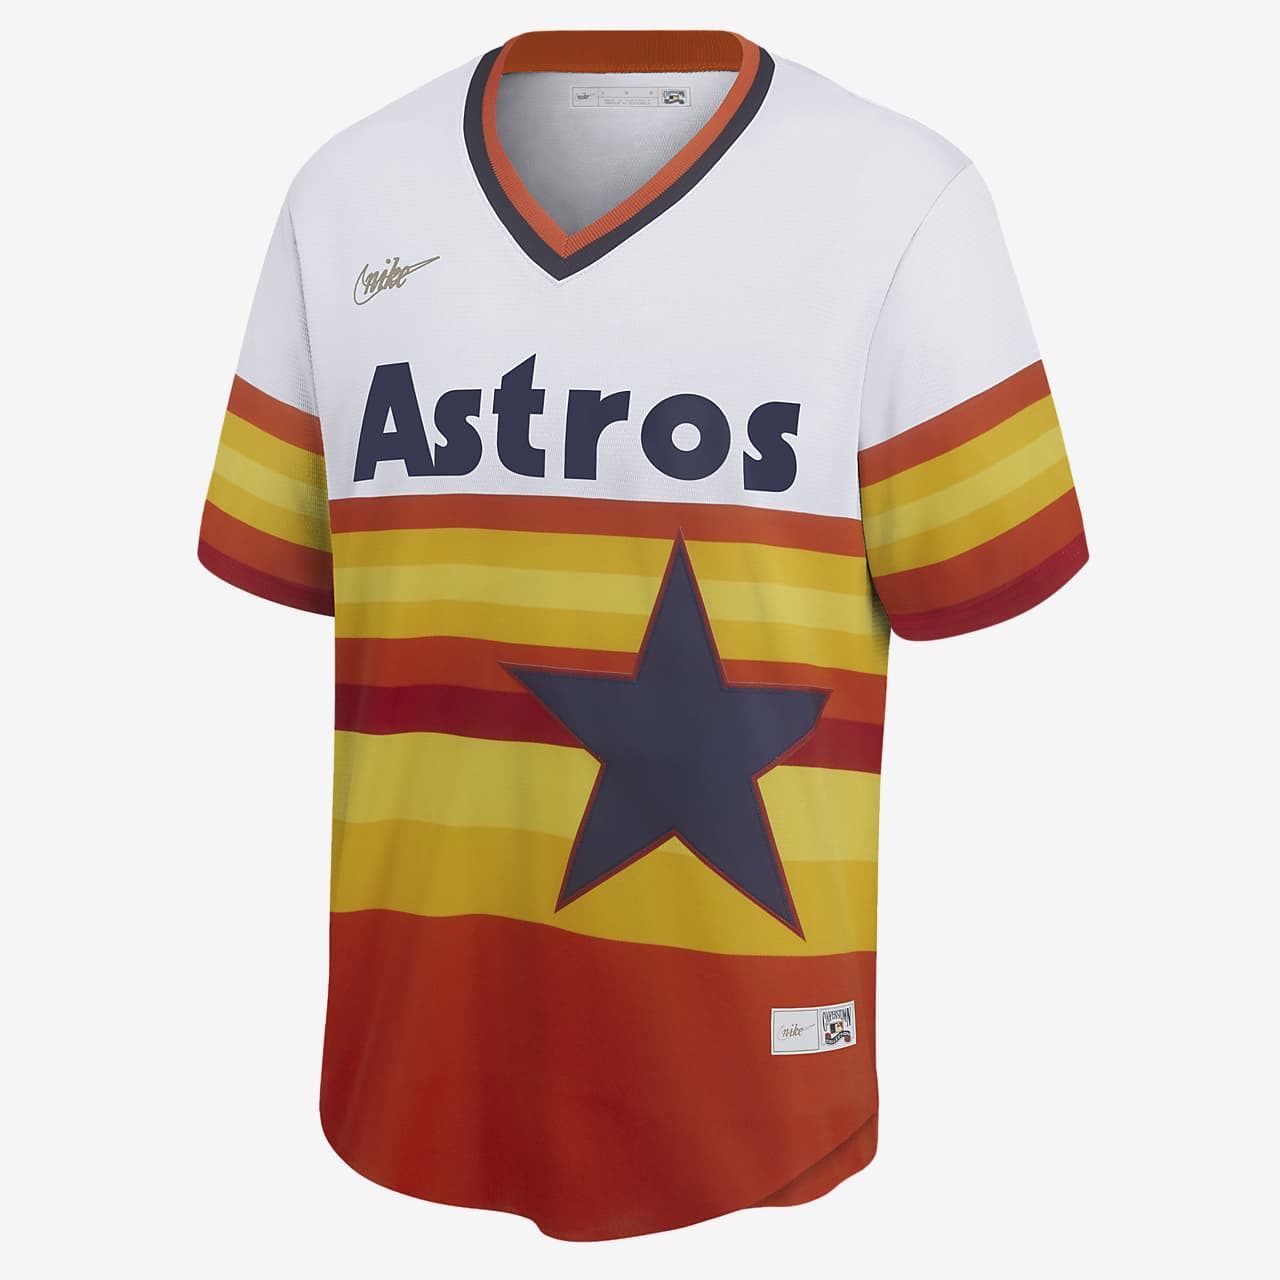 astros shirts cheap